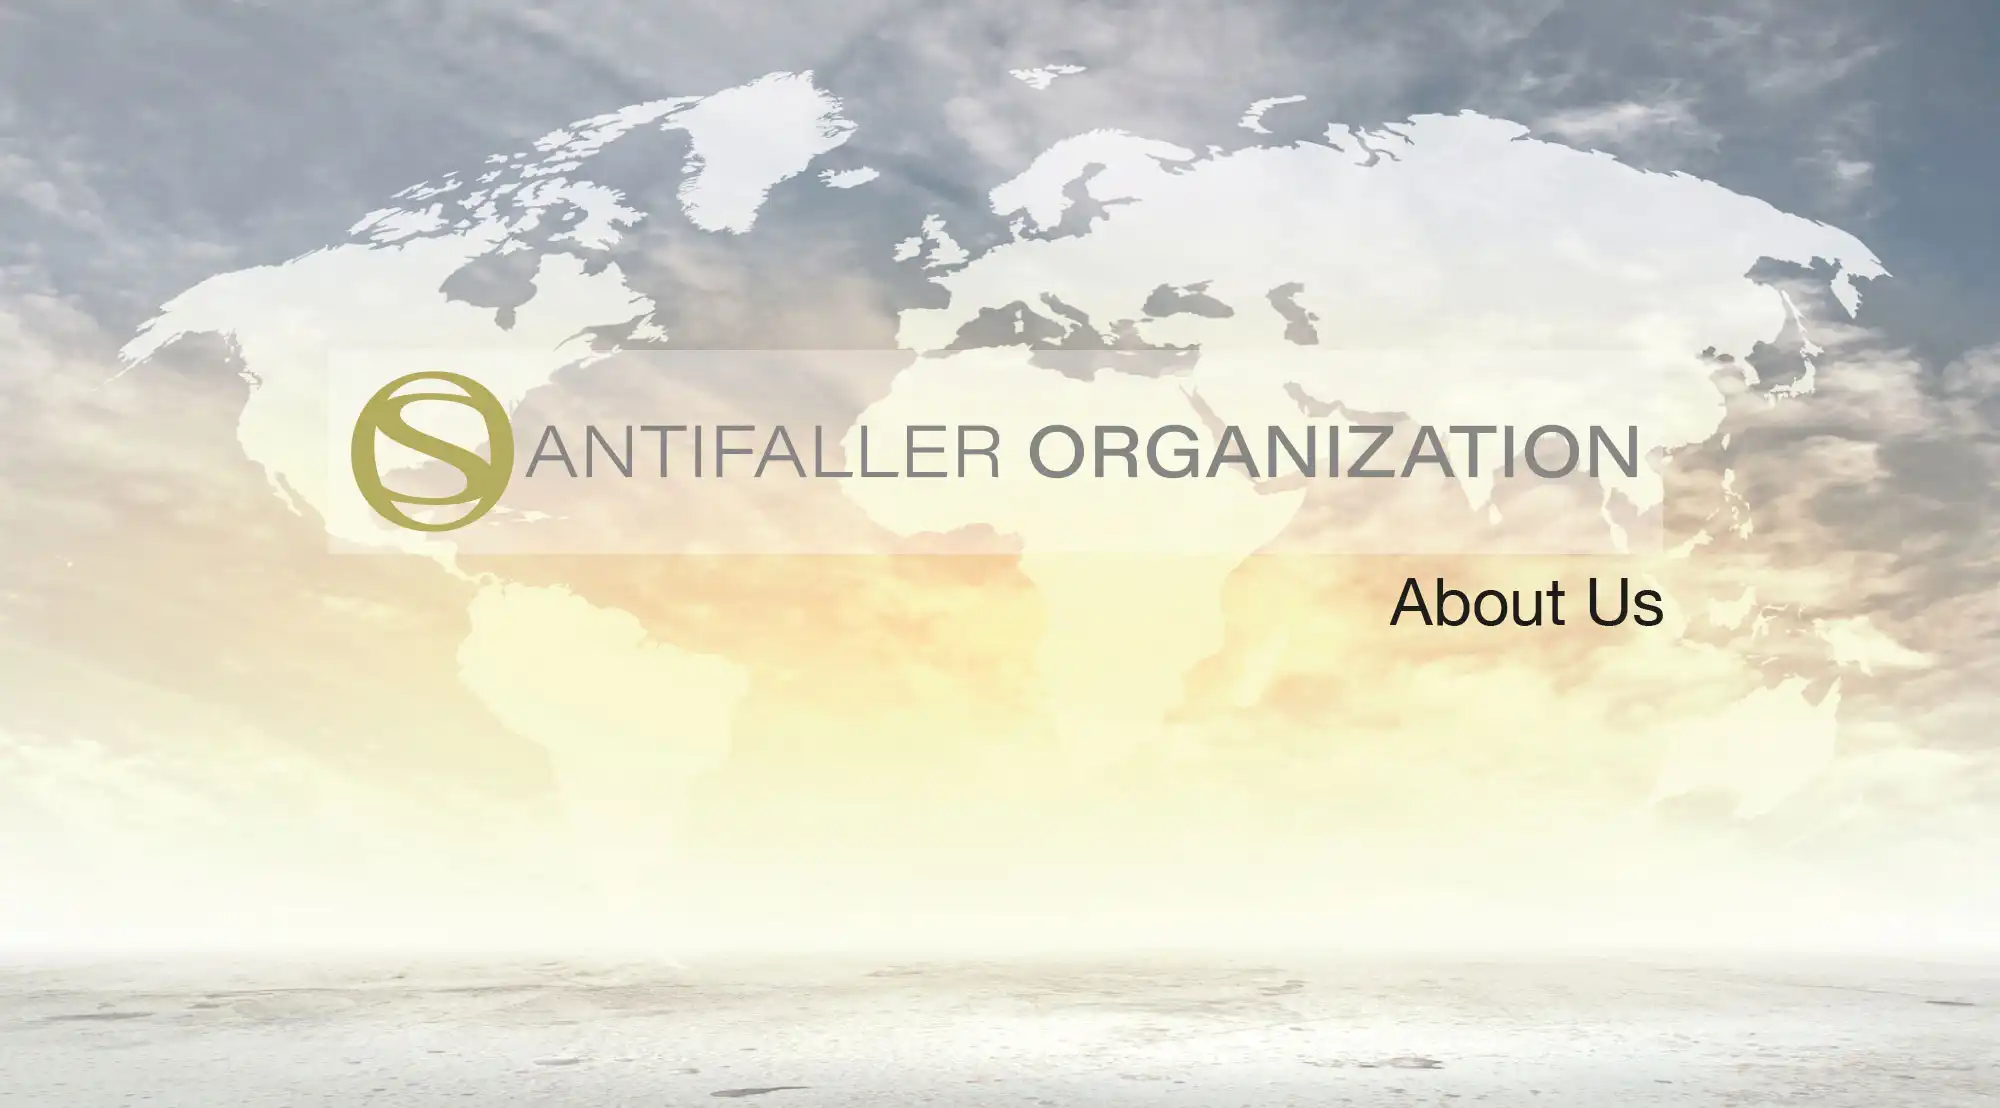 The-Santifaller-Organization-About-Us-Header